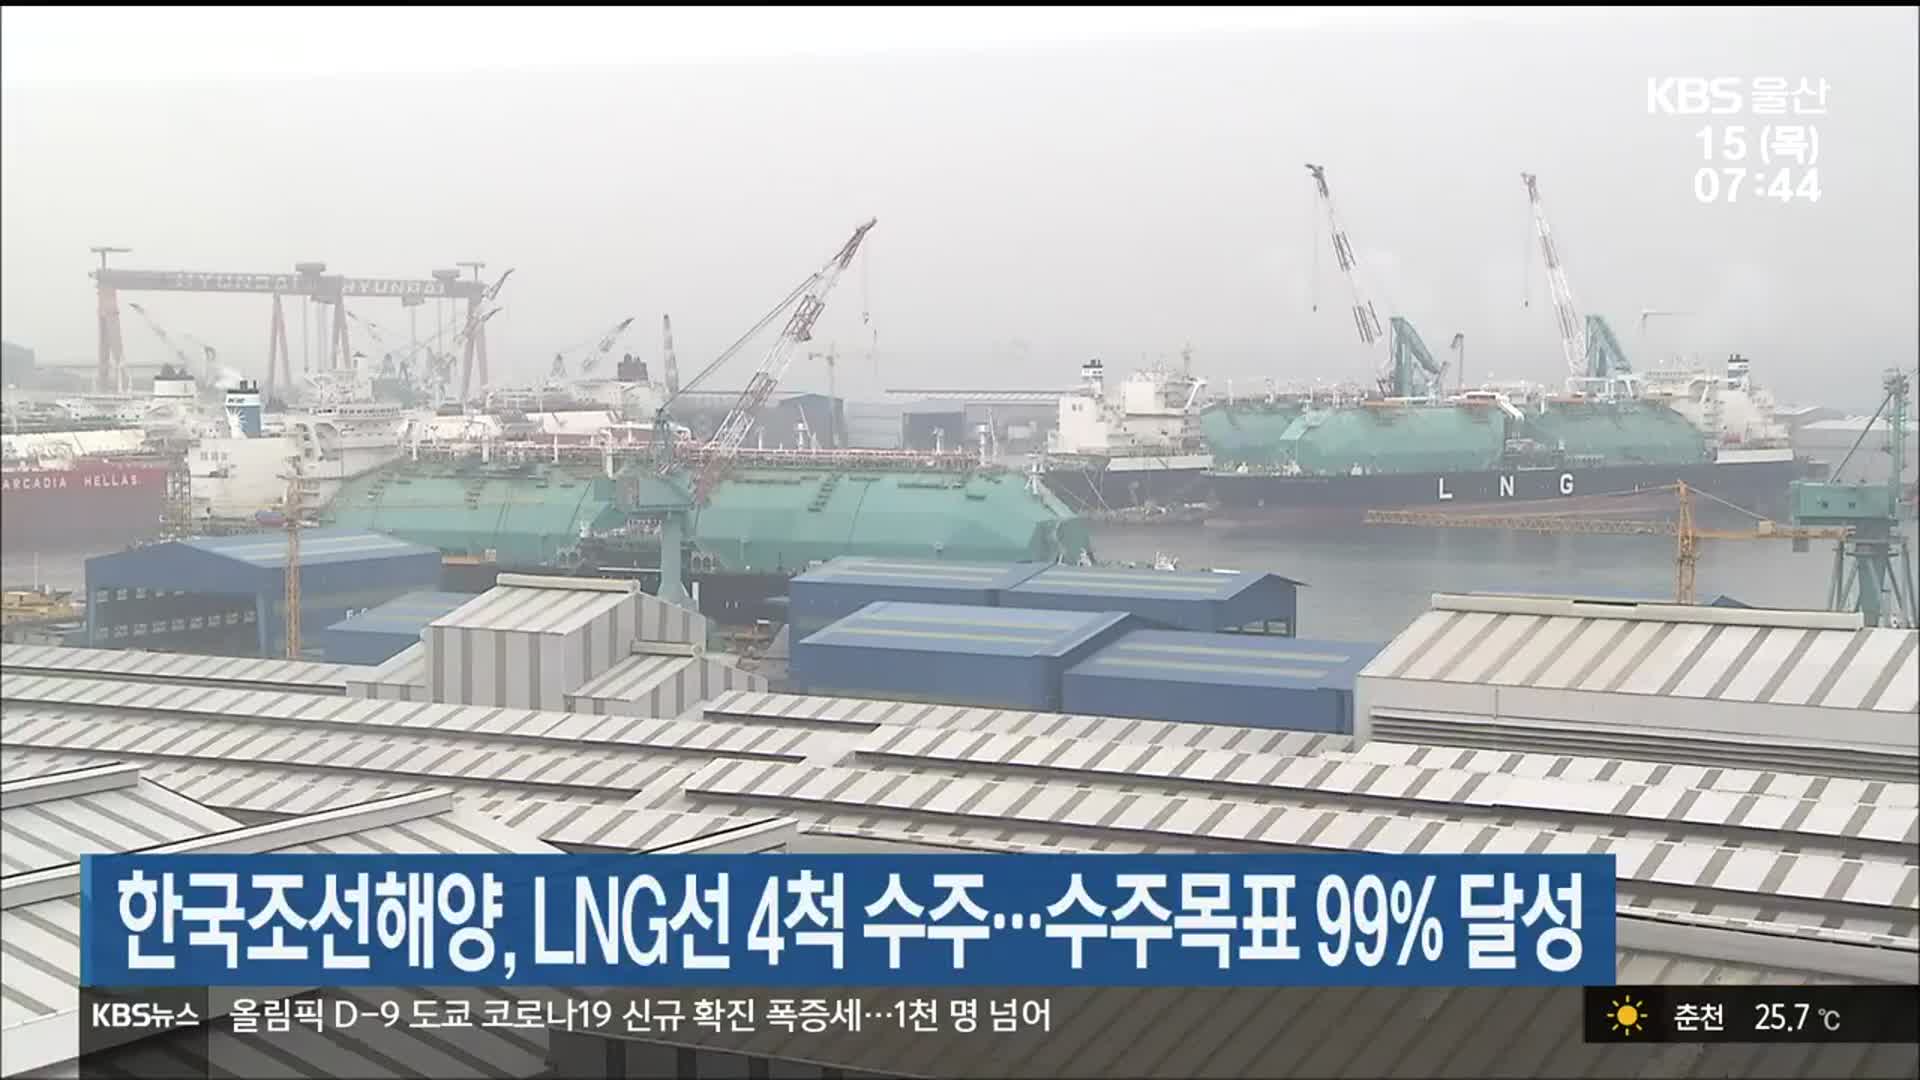 한국조선해양, LNG선 4척 수주…수주목표 99% 달성